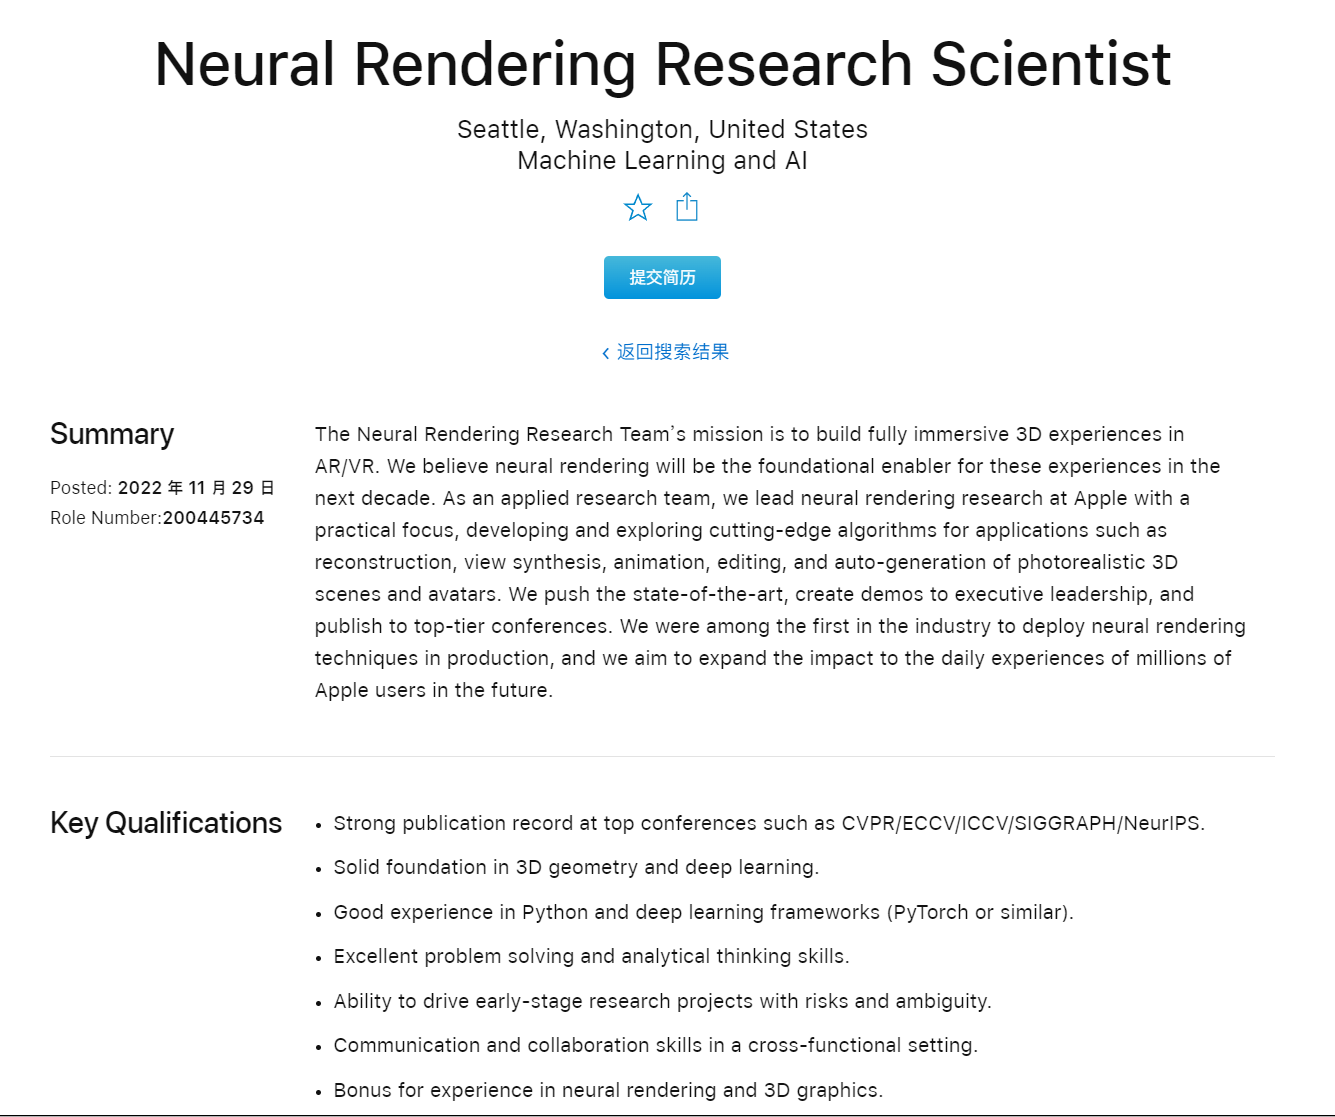 蘋果正招募神經渲染研究科學家，旨在為 AR / VR 產品打造沉浸式體驗